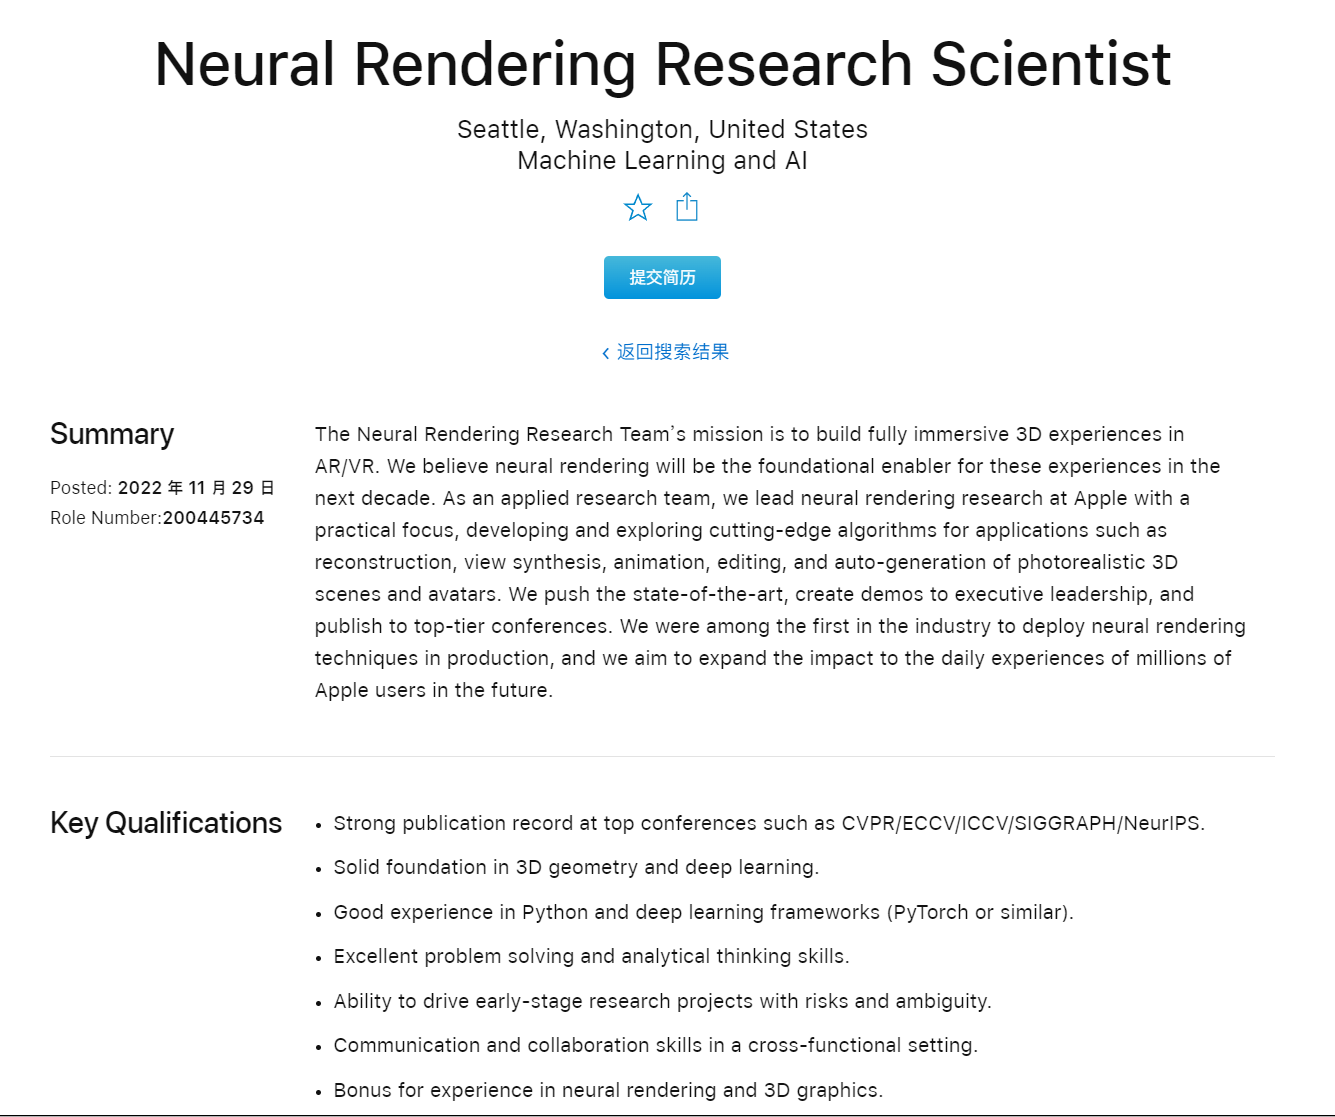 蘋果正招募神經渲染研究科學家，旨在為 AR / VR 產品打造沉浸式體驗